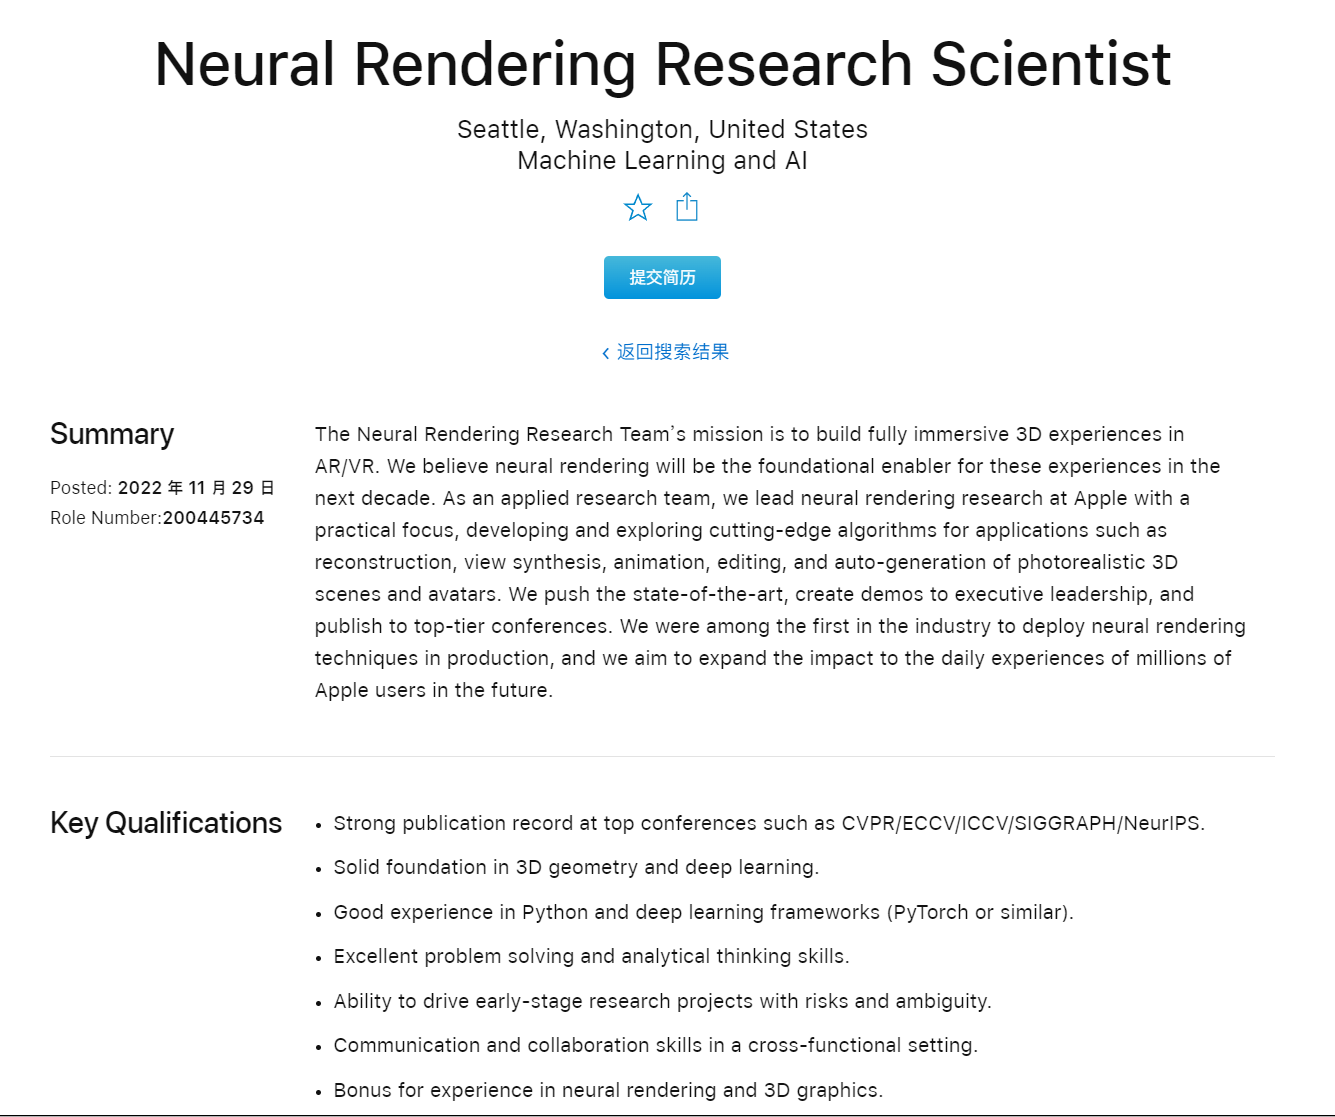 蘋果正招募神經渲染研究科學家，旨在為 AR / VR 產品打造沉浸式體驗